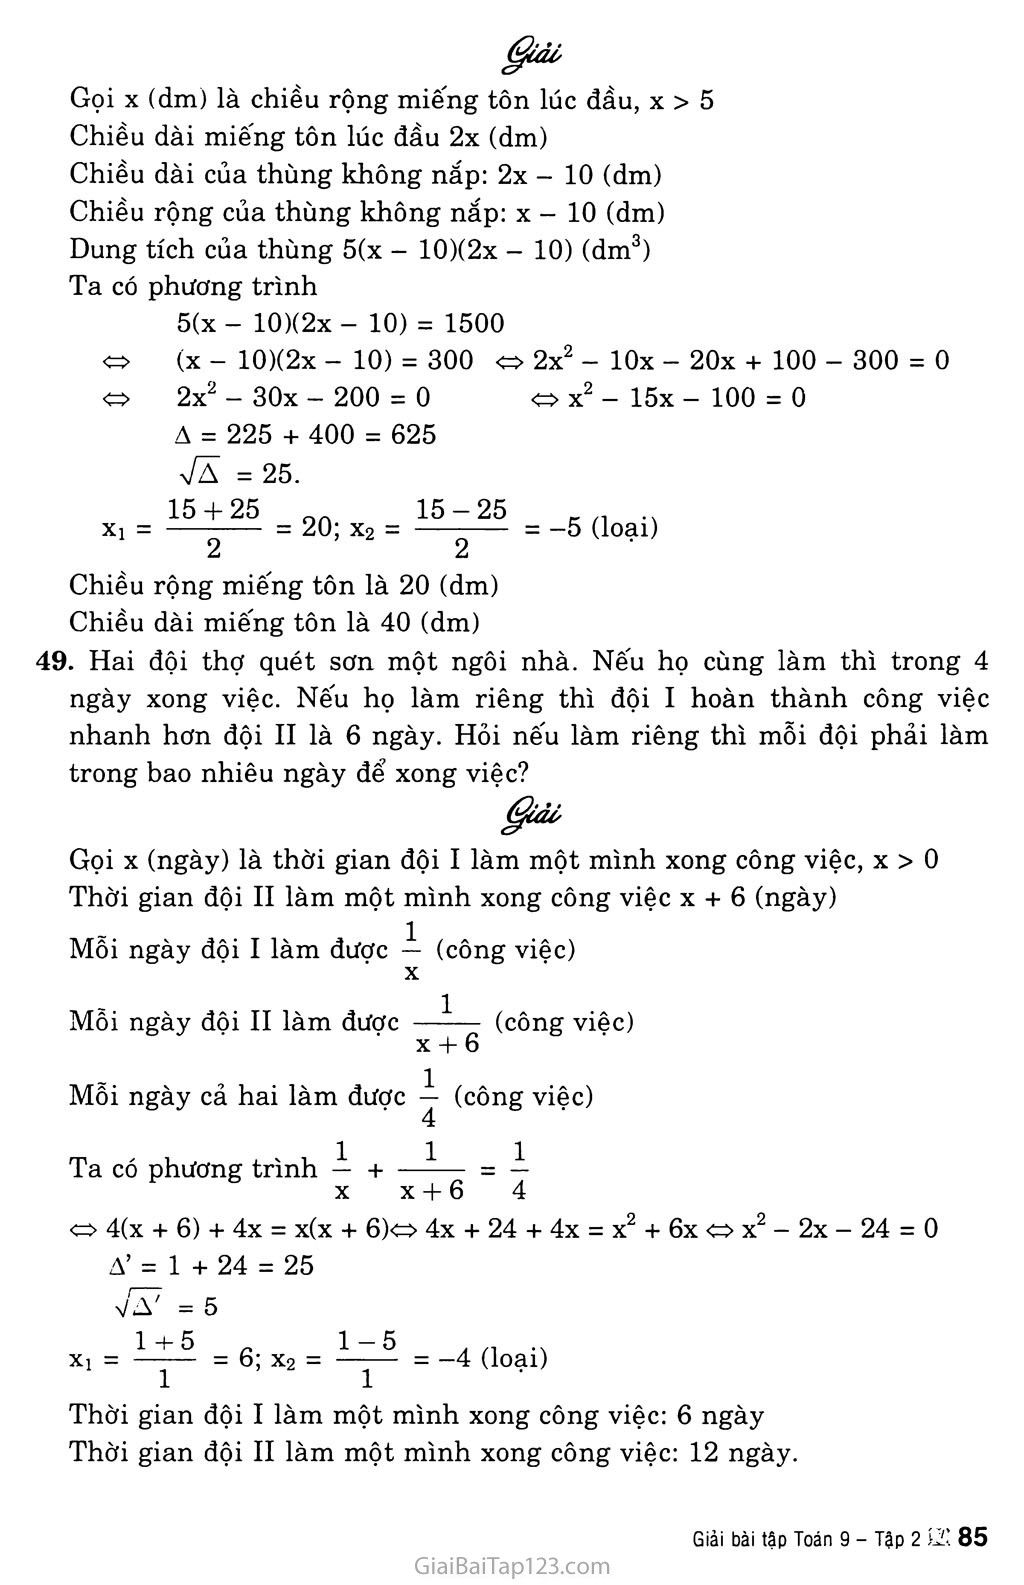 Bài 8. Giải bài toán bằng cách lập phương trình trang 6